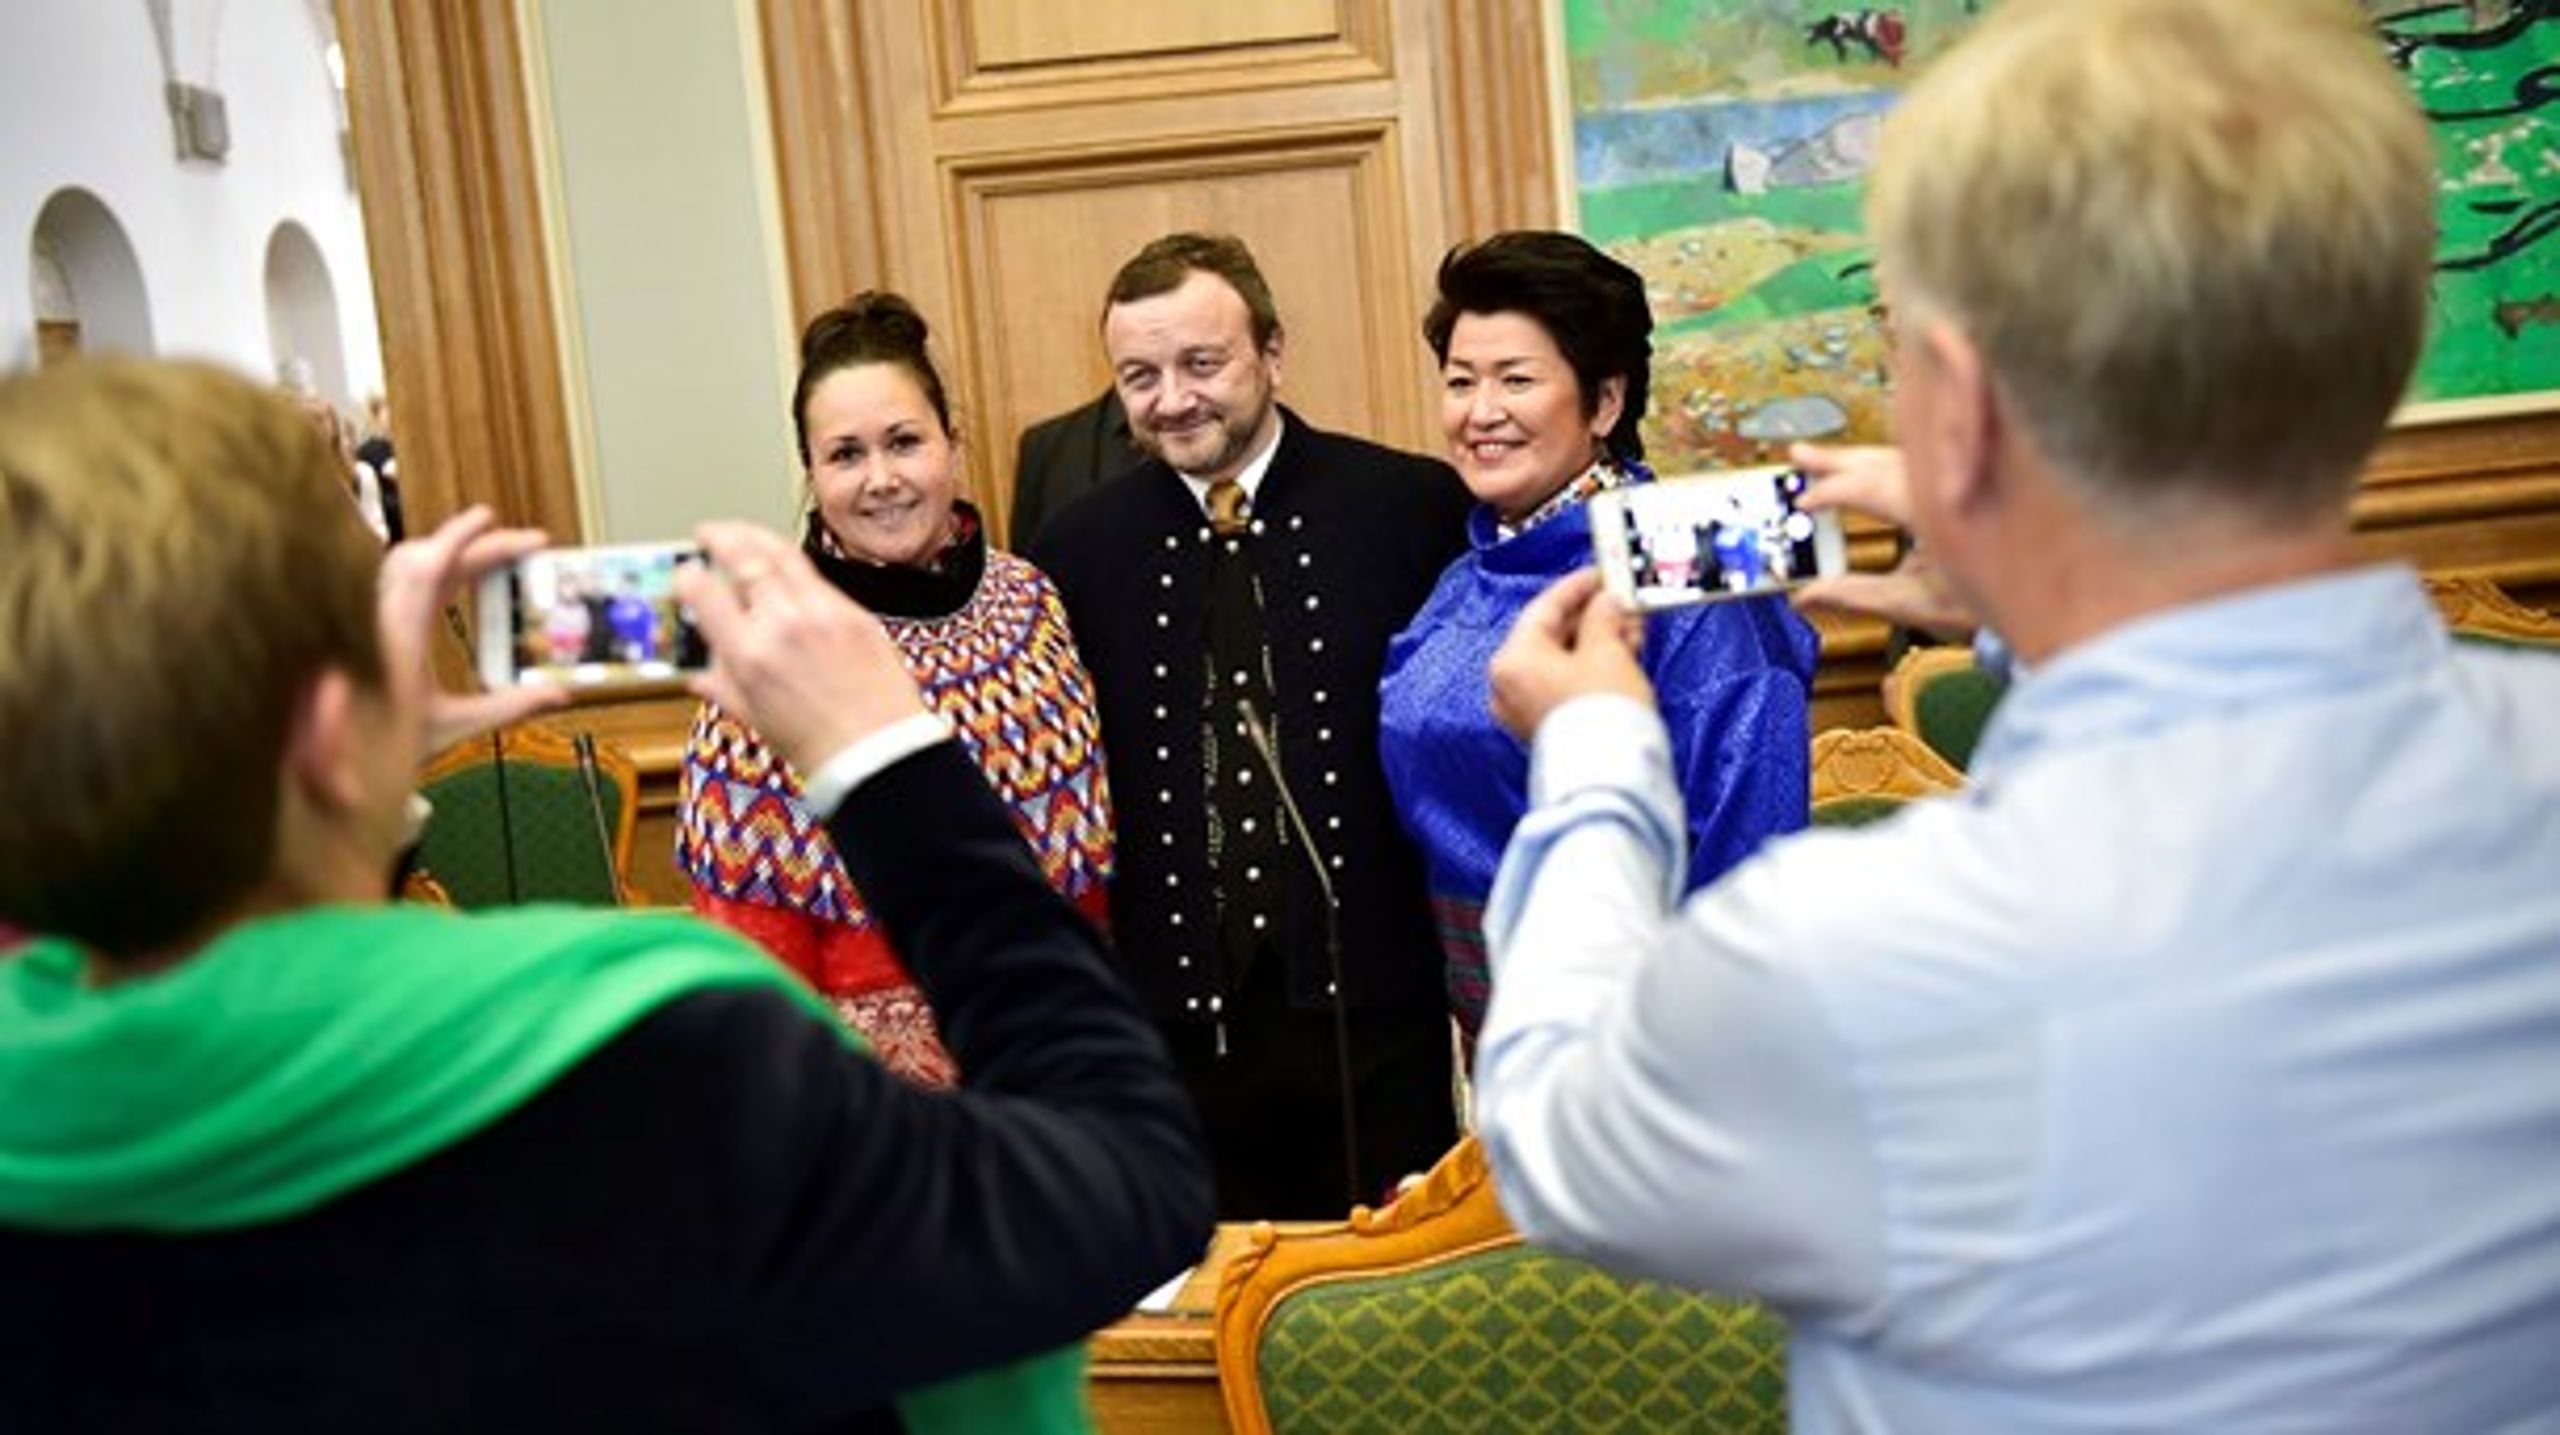 De to grønlandske MF'er, Aaja Chemnitz Larsen (t.v.) og Aleqa Hammond (t.h.), sammen med det færøske folketingsmedlem Magni Arge (i midten) ved Folketingets åbning i 2016.